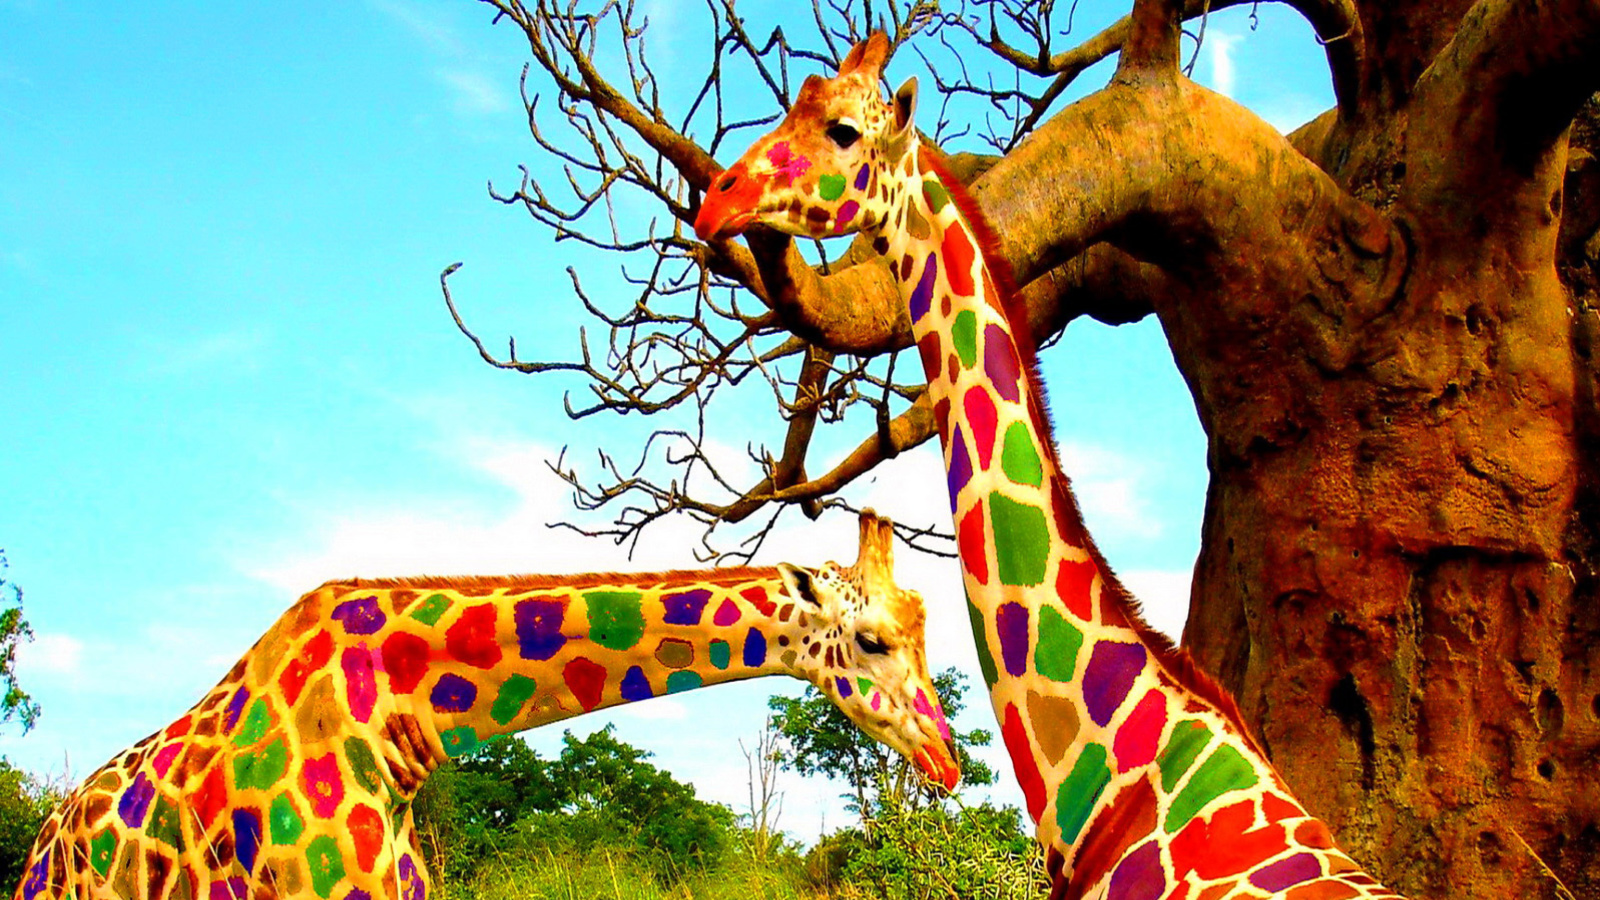 Multicolored Giraffe Family wallpaper 1600x900